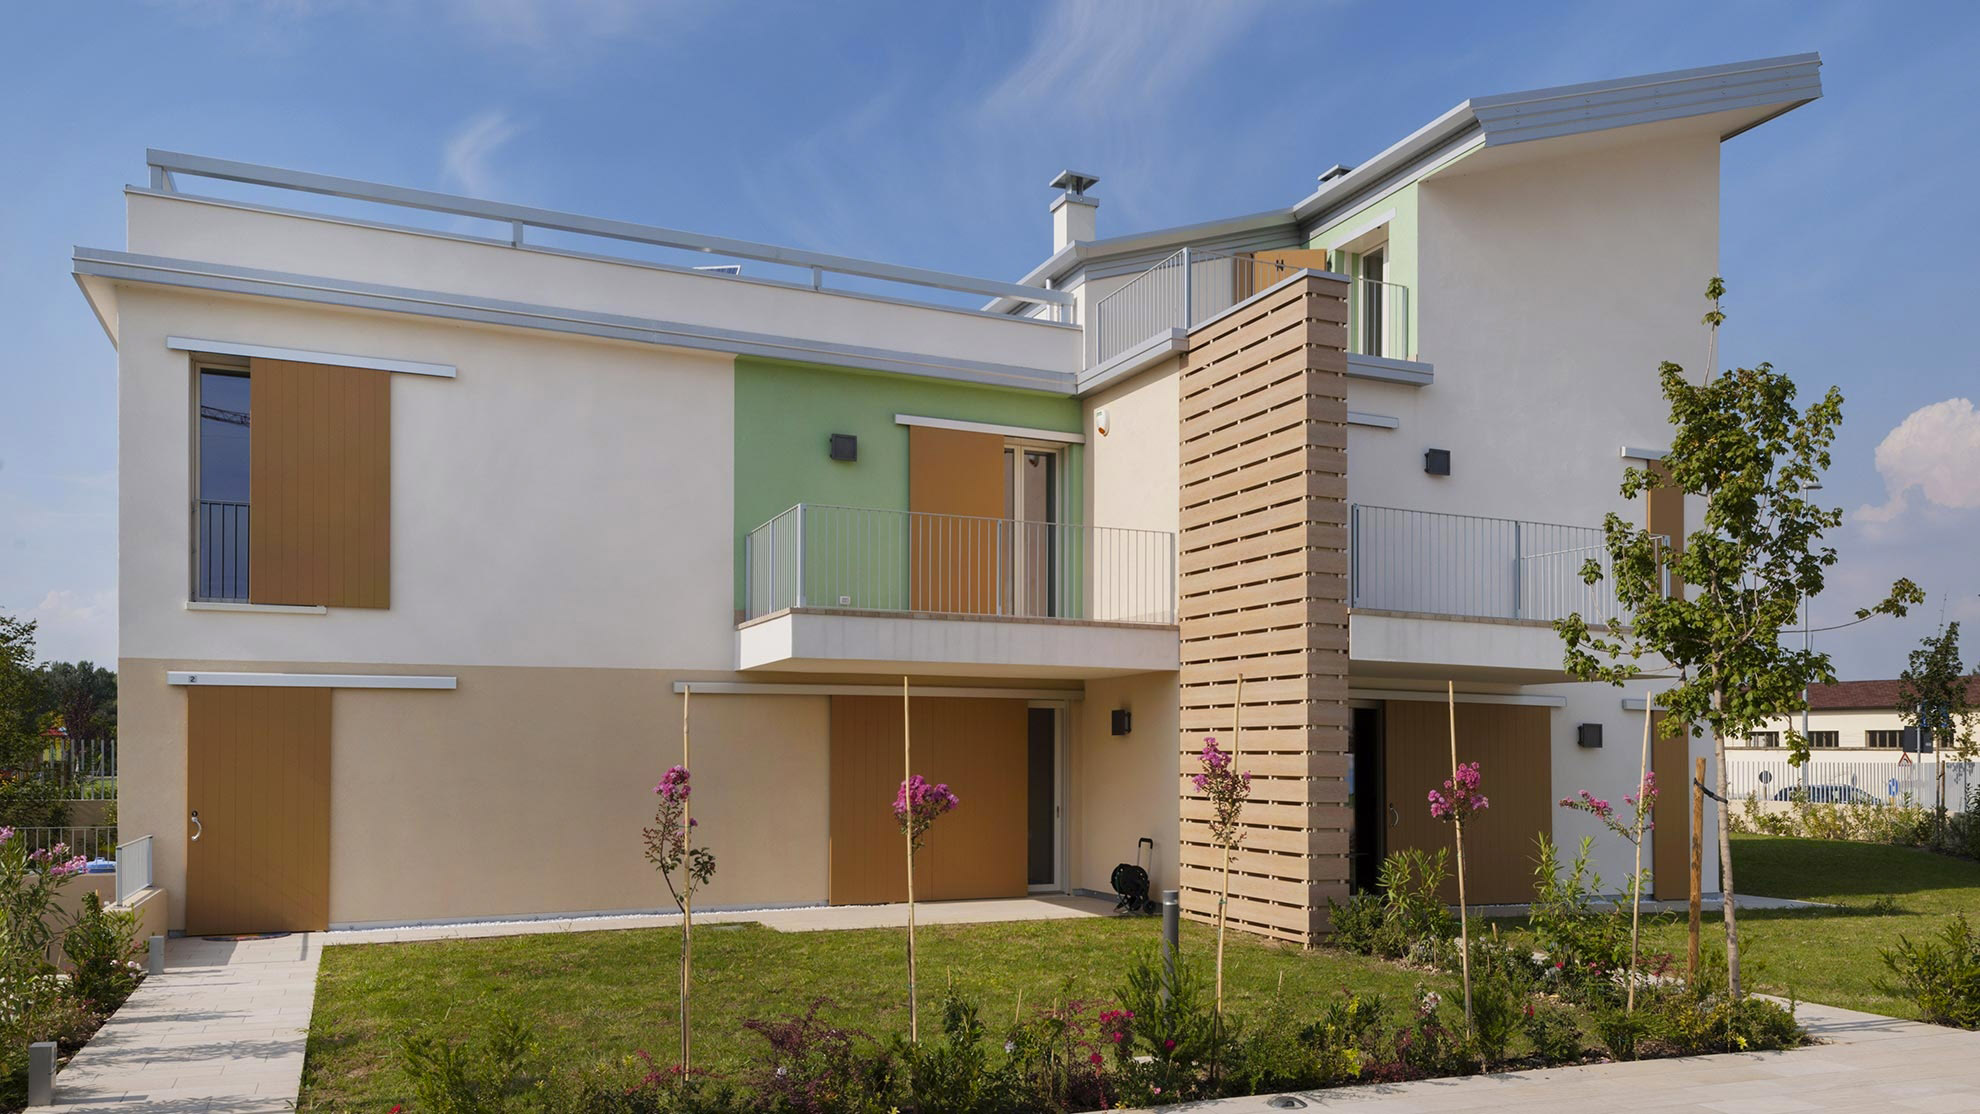 Residence Santa Caterina 5 - Progettazione residenziale